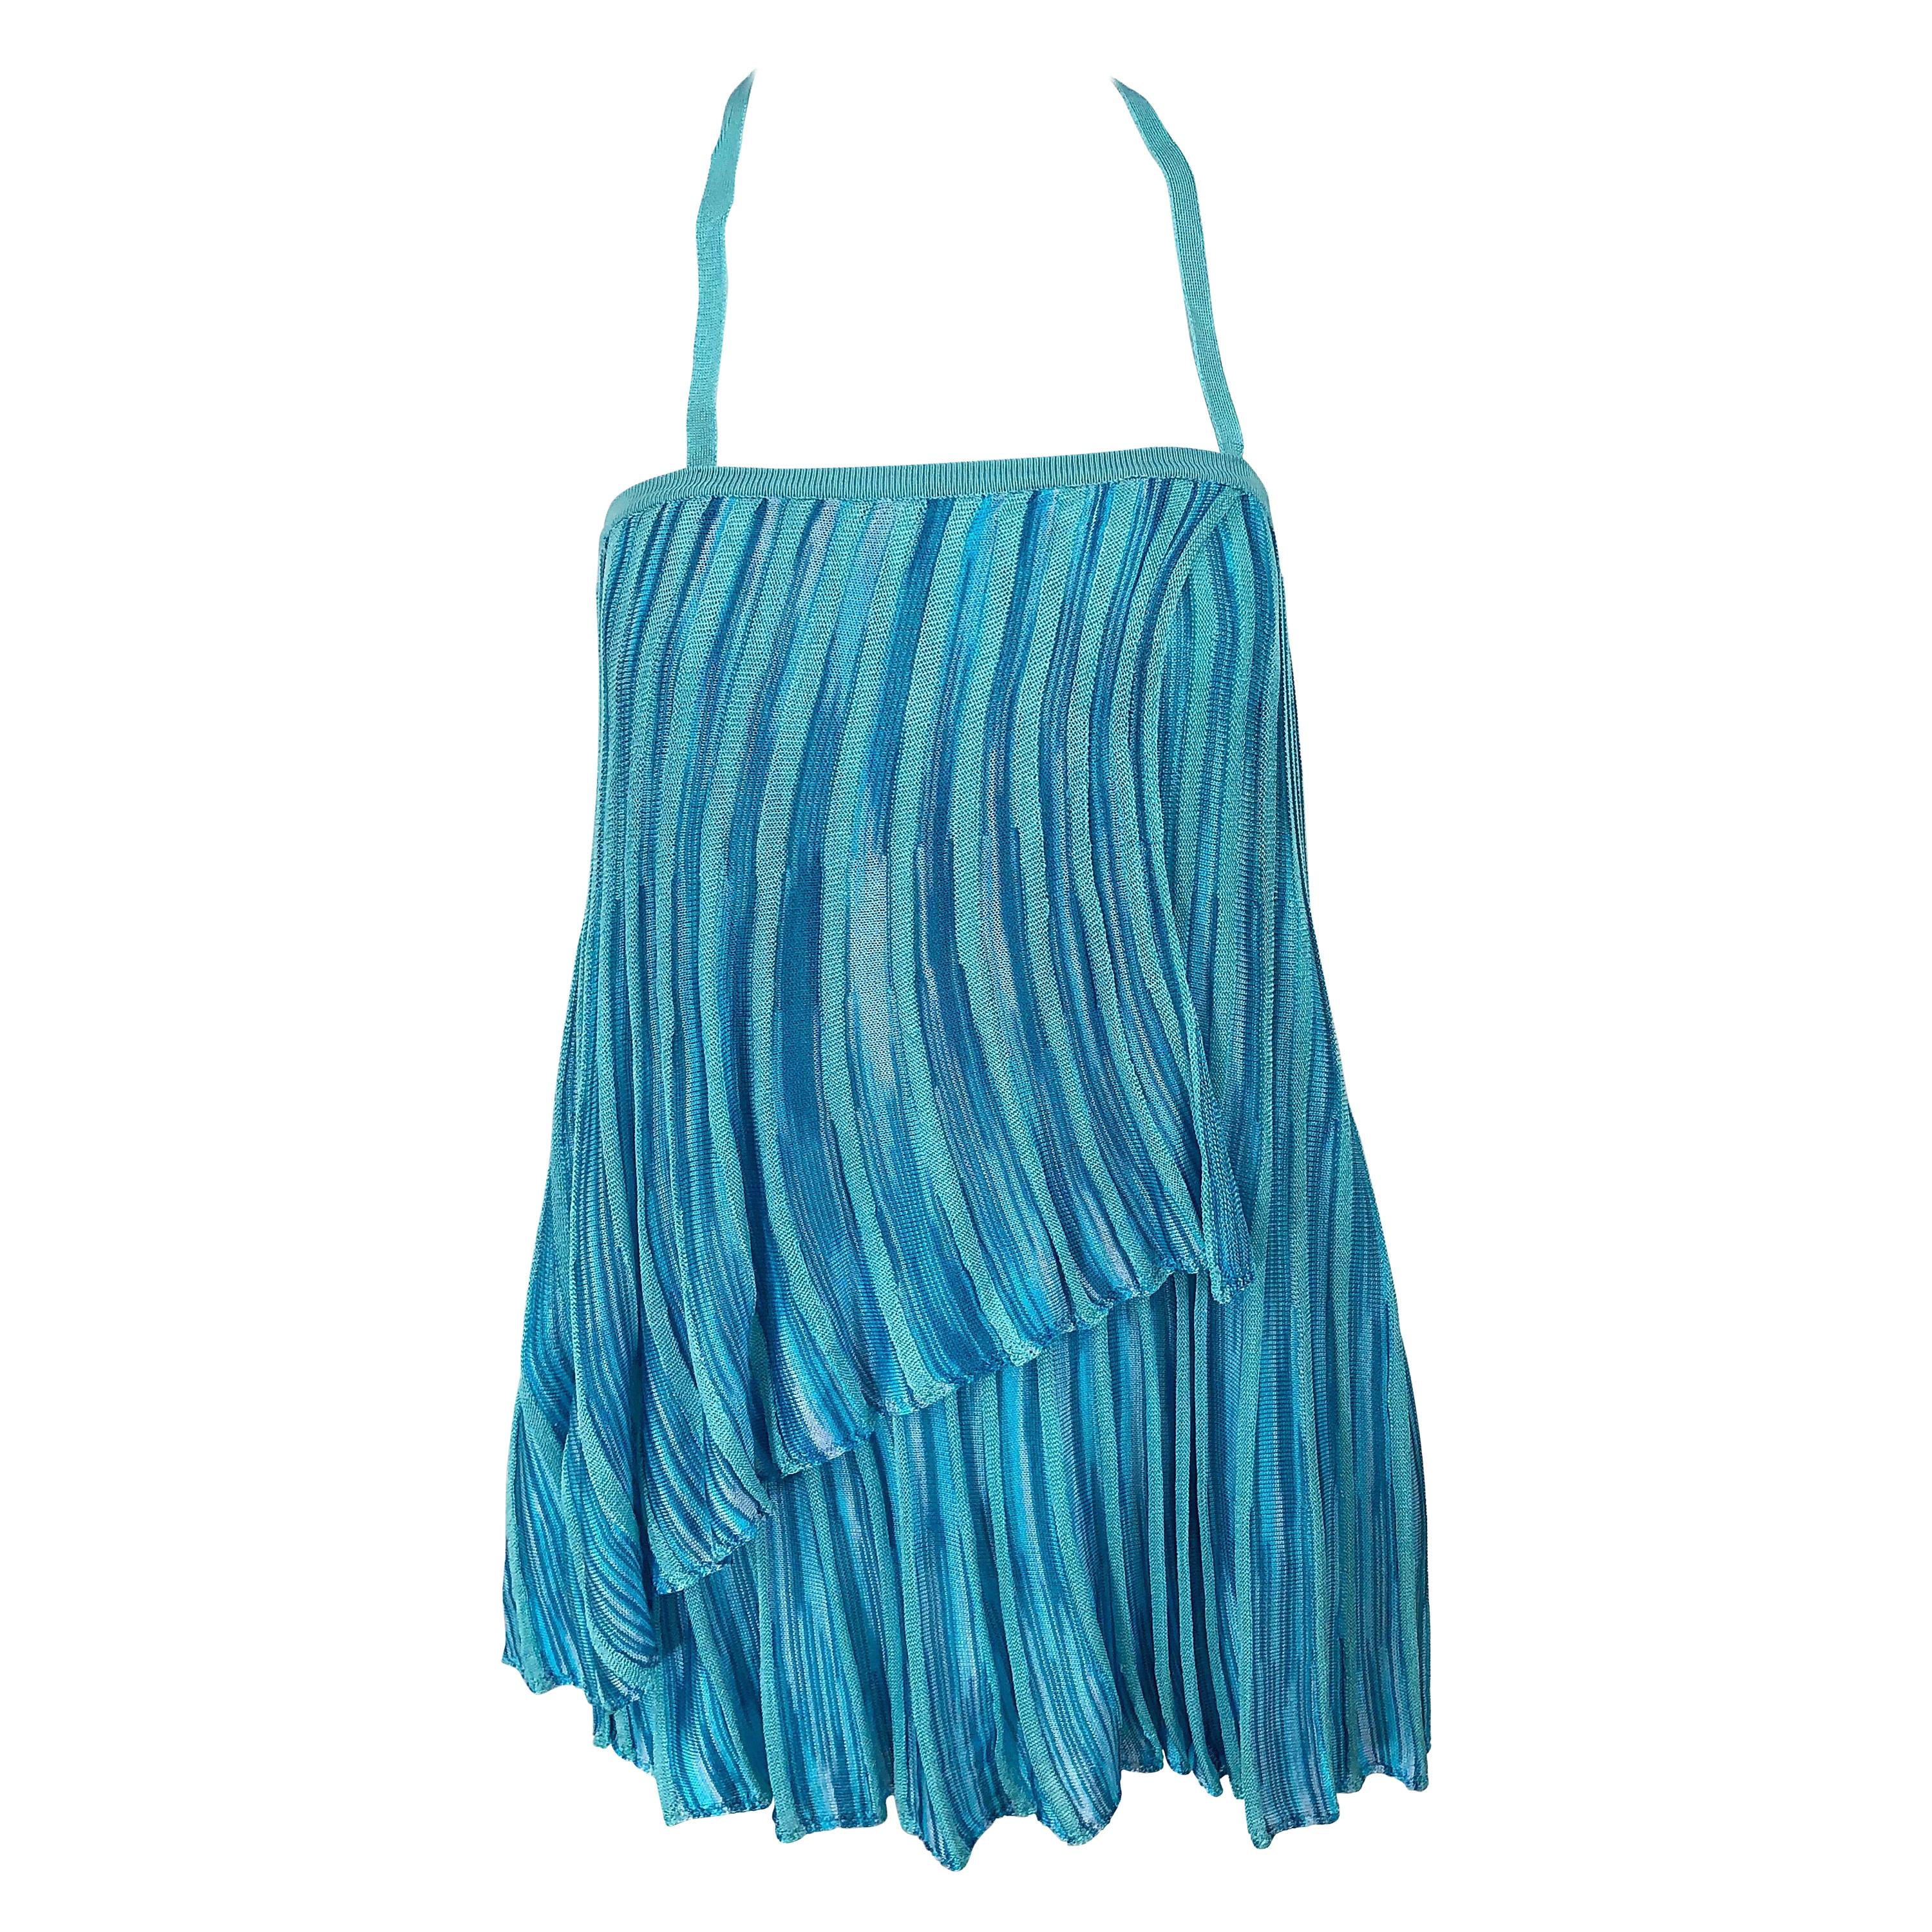 Vintage Missoni 1990s Turquoise Teal Blue Knit Vintage 90s Halter Top OR Skirt For Sale